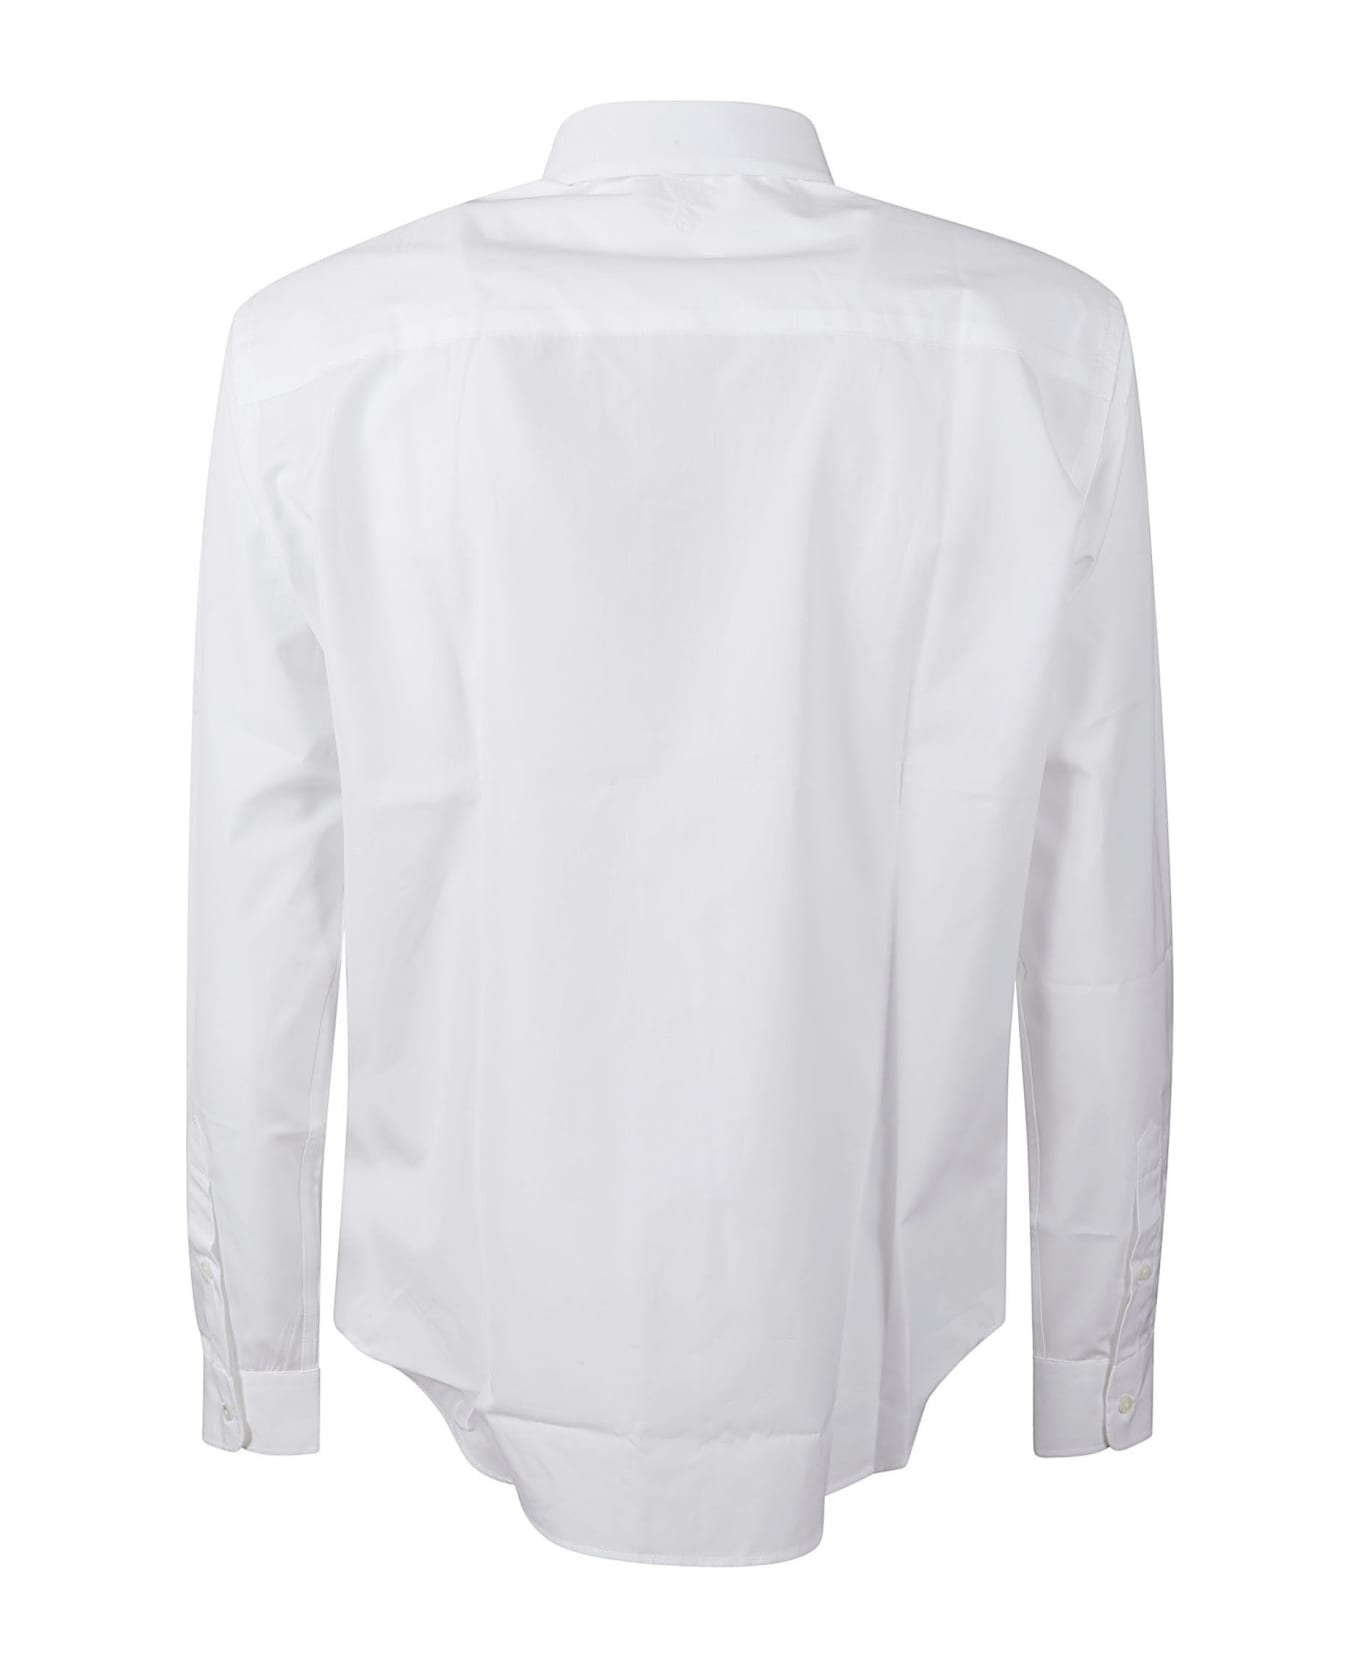 Ami Alexandre Mattiussi Round Hem Plain Shirt - White シャツ